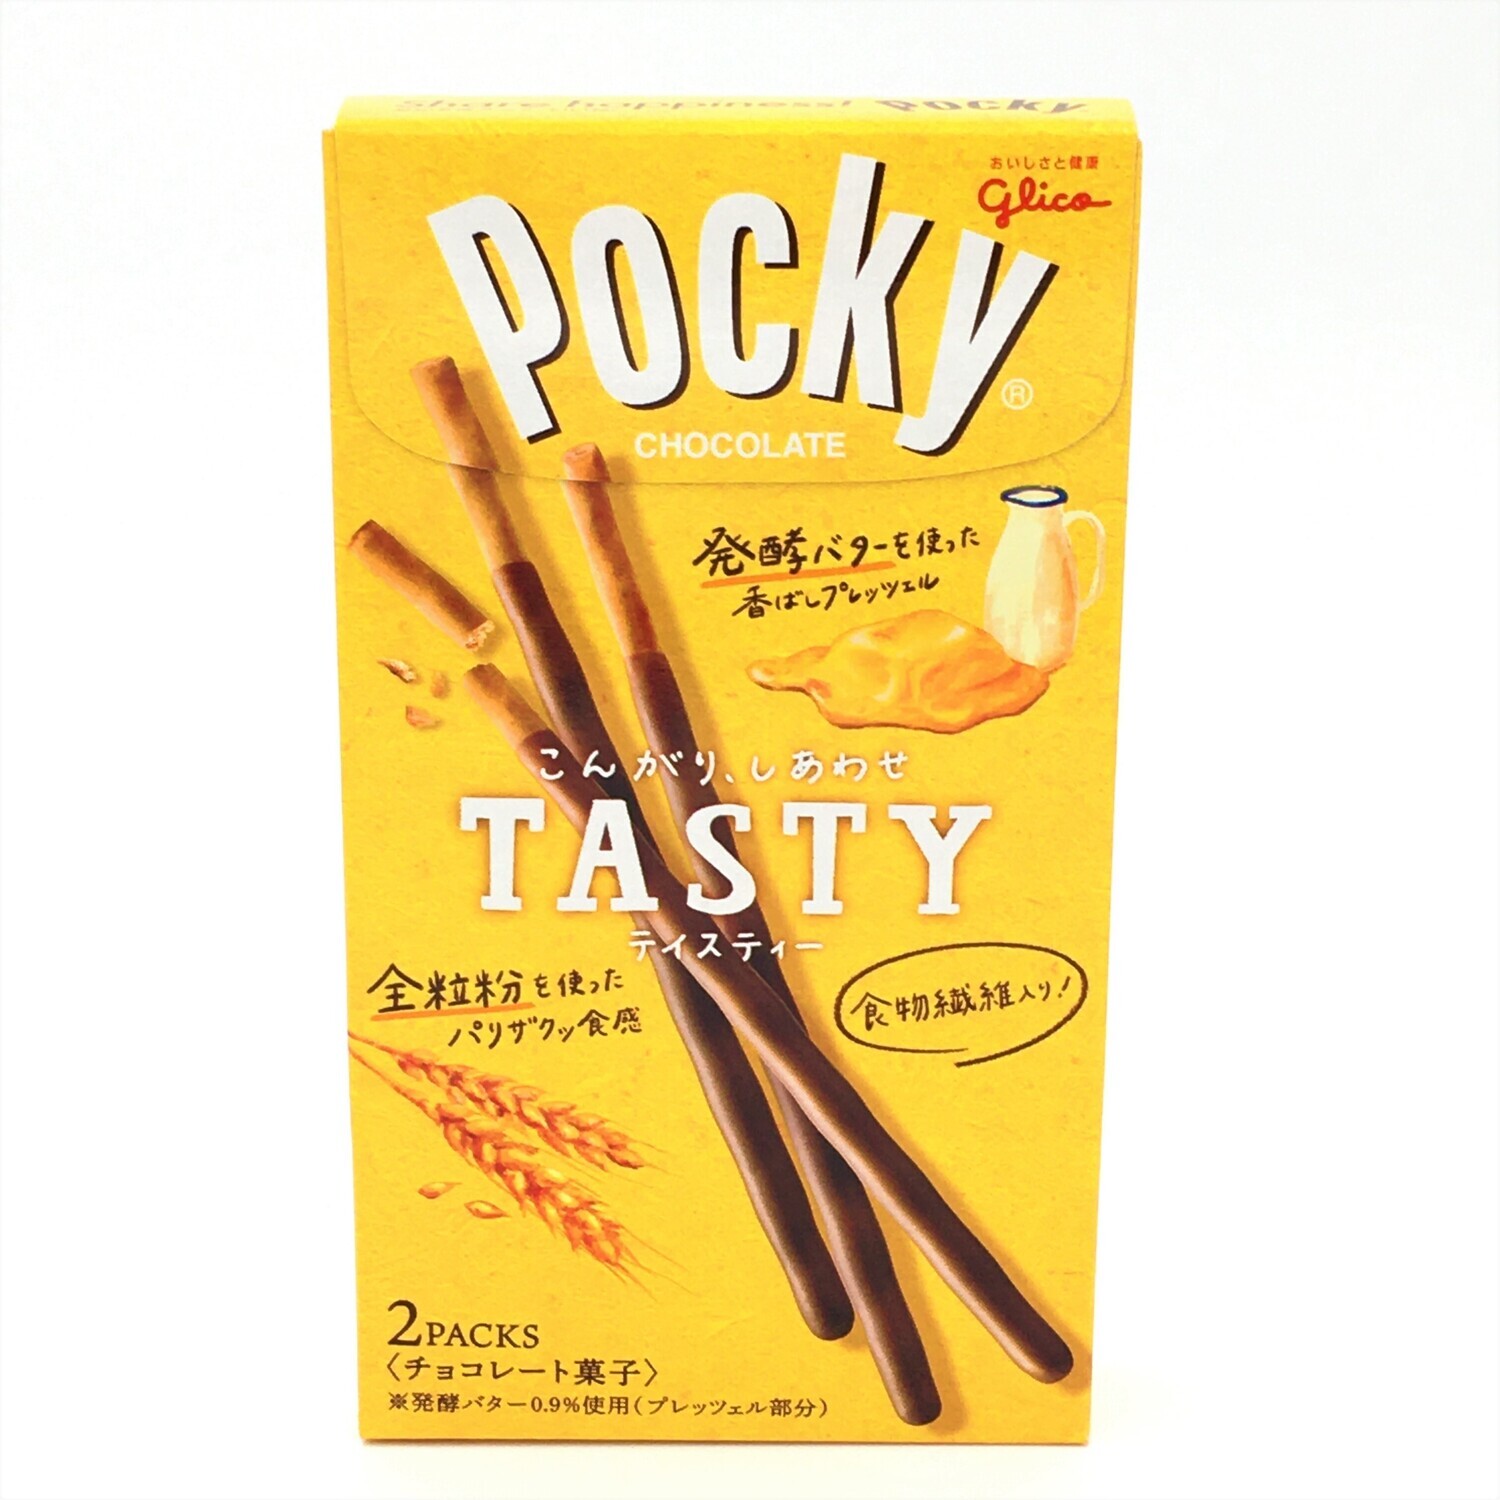 Pocky Tasty Chocolate Cream 2.47oz